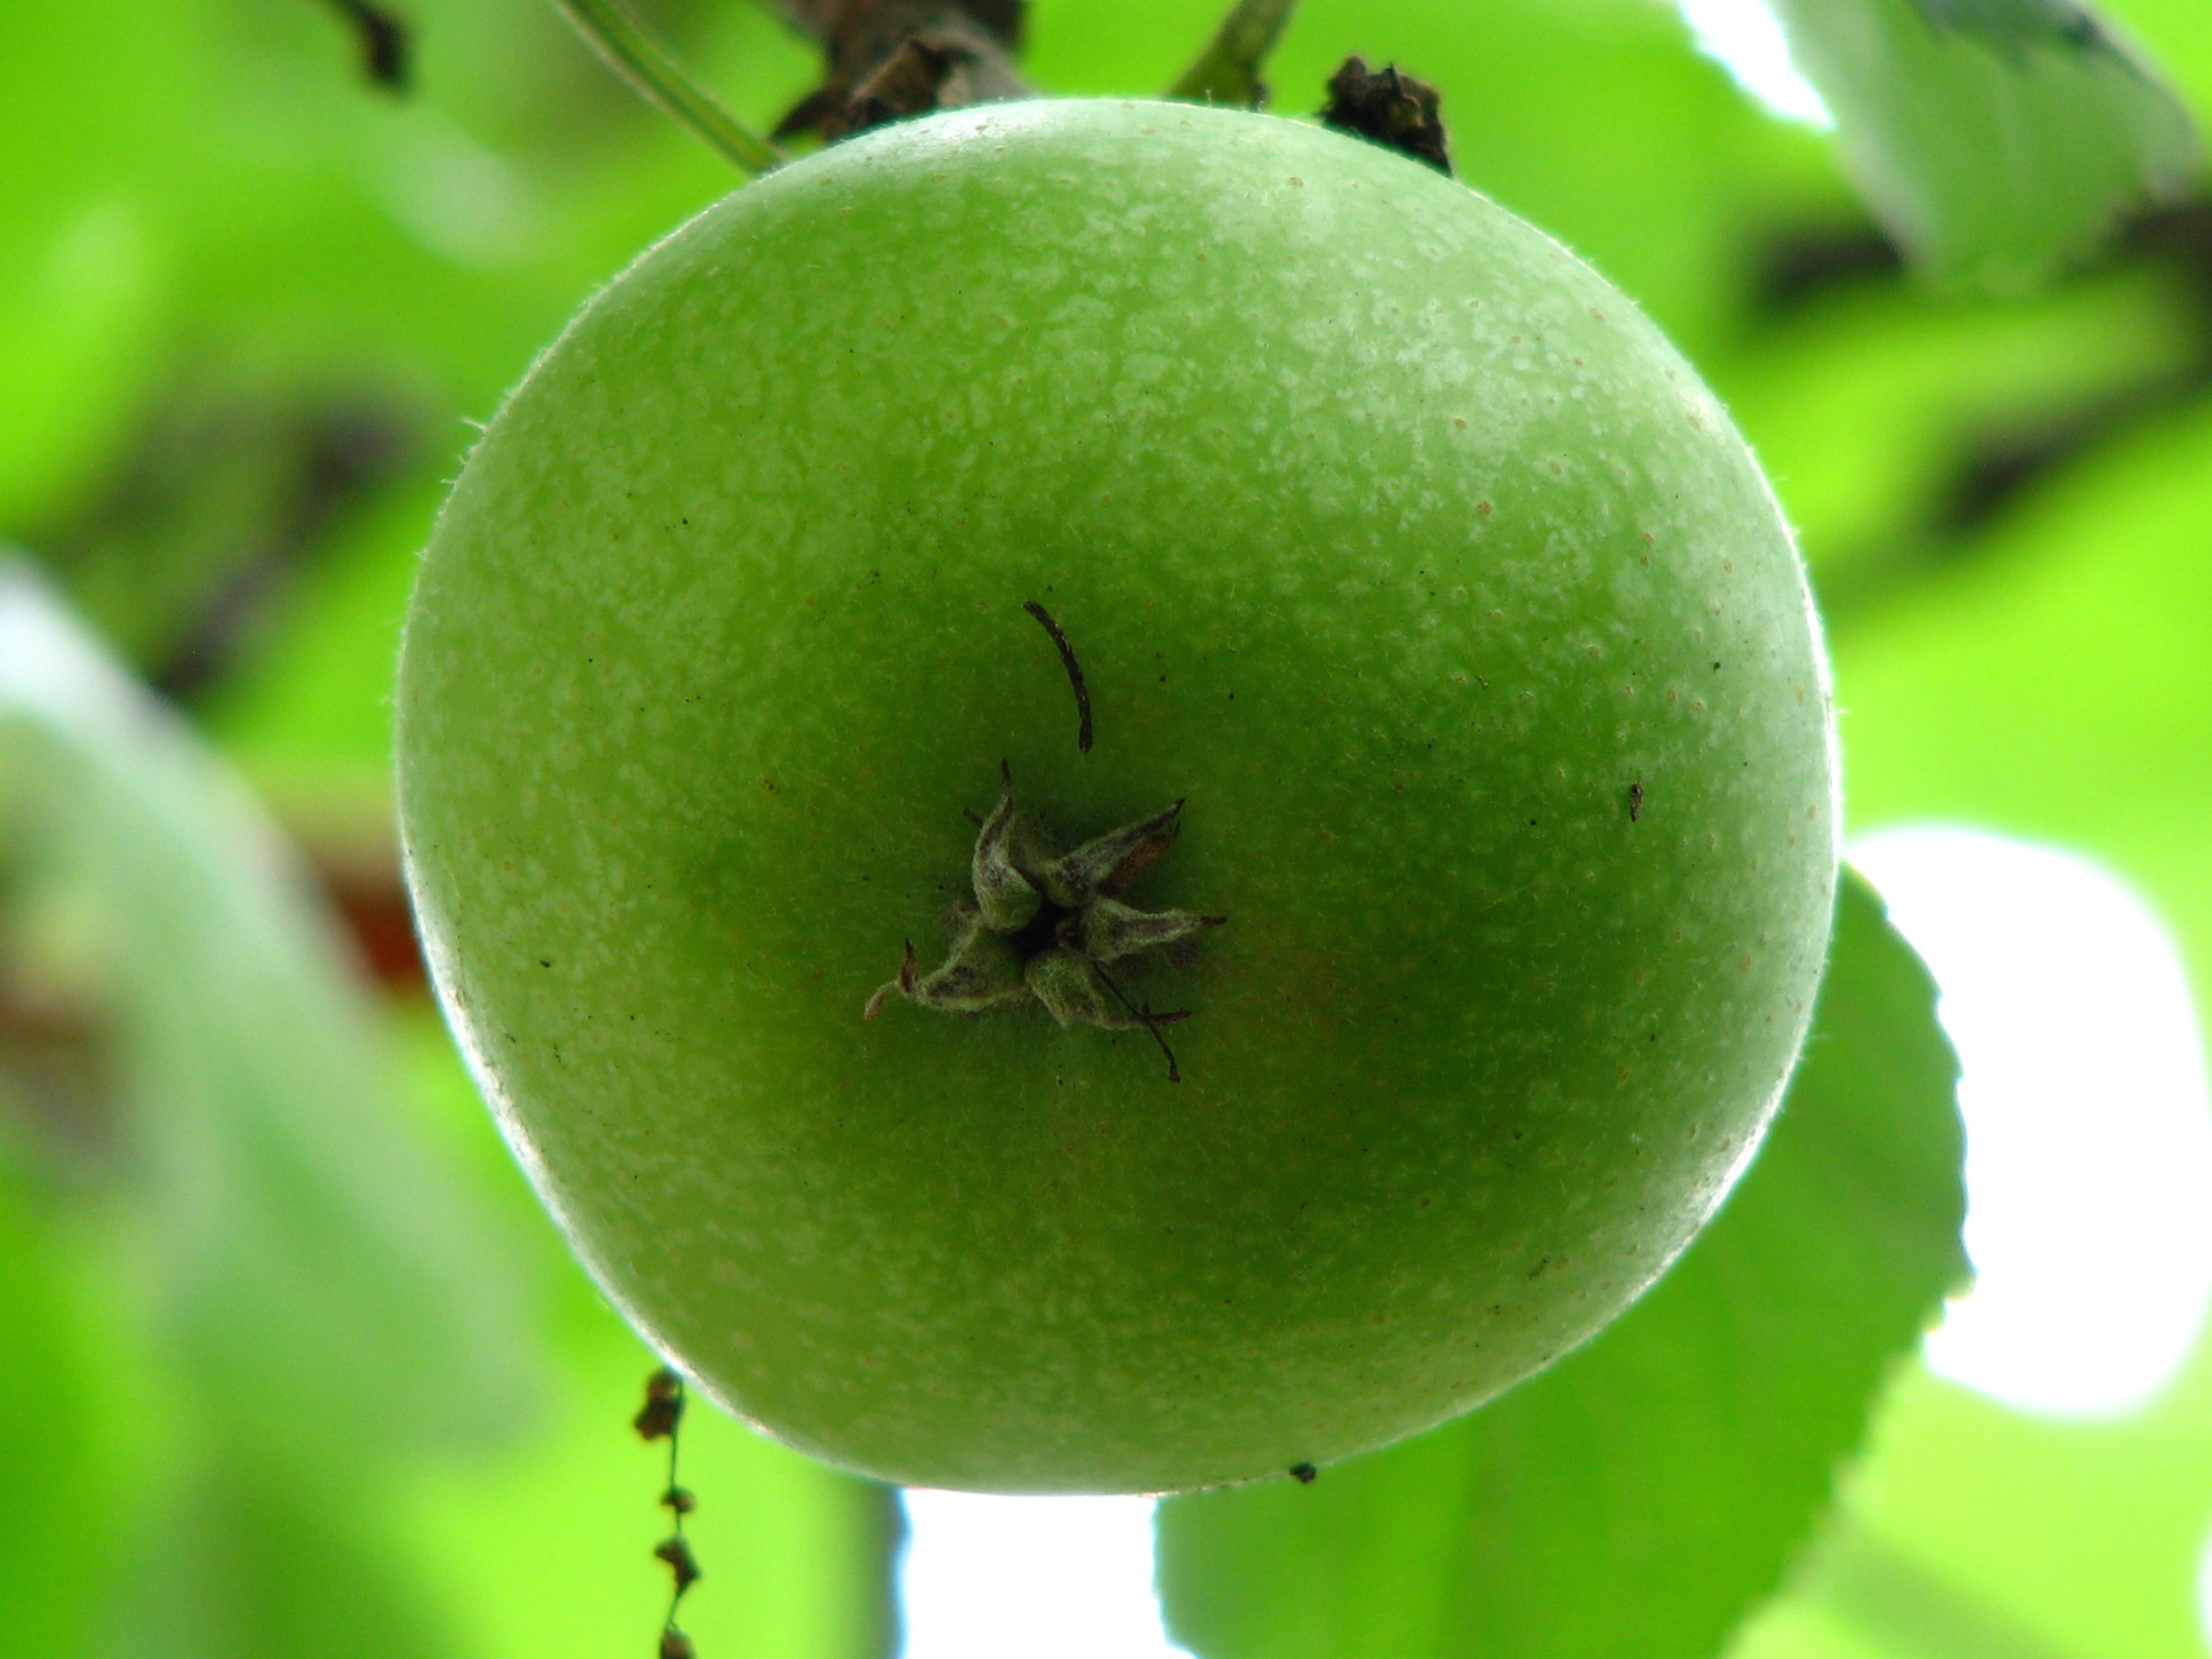 green round fruit during daytime